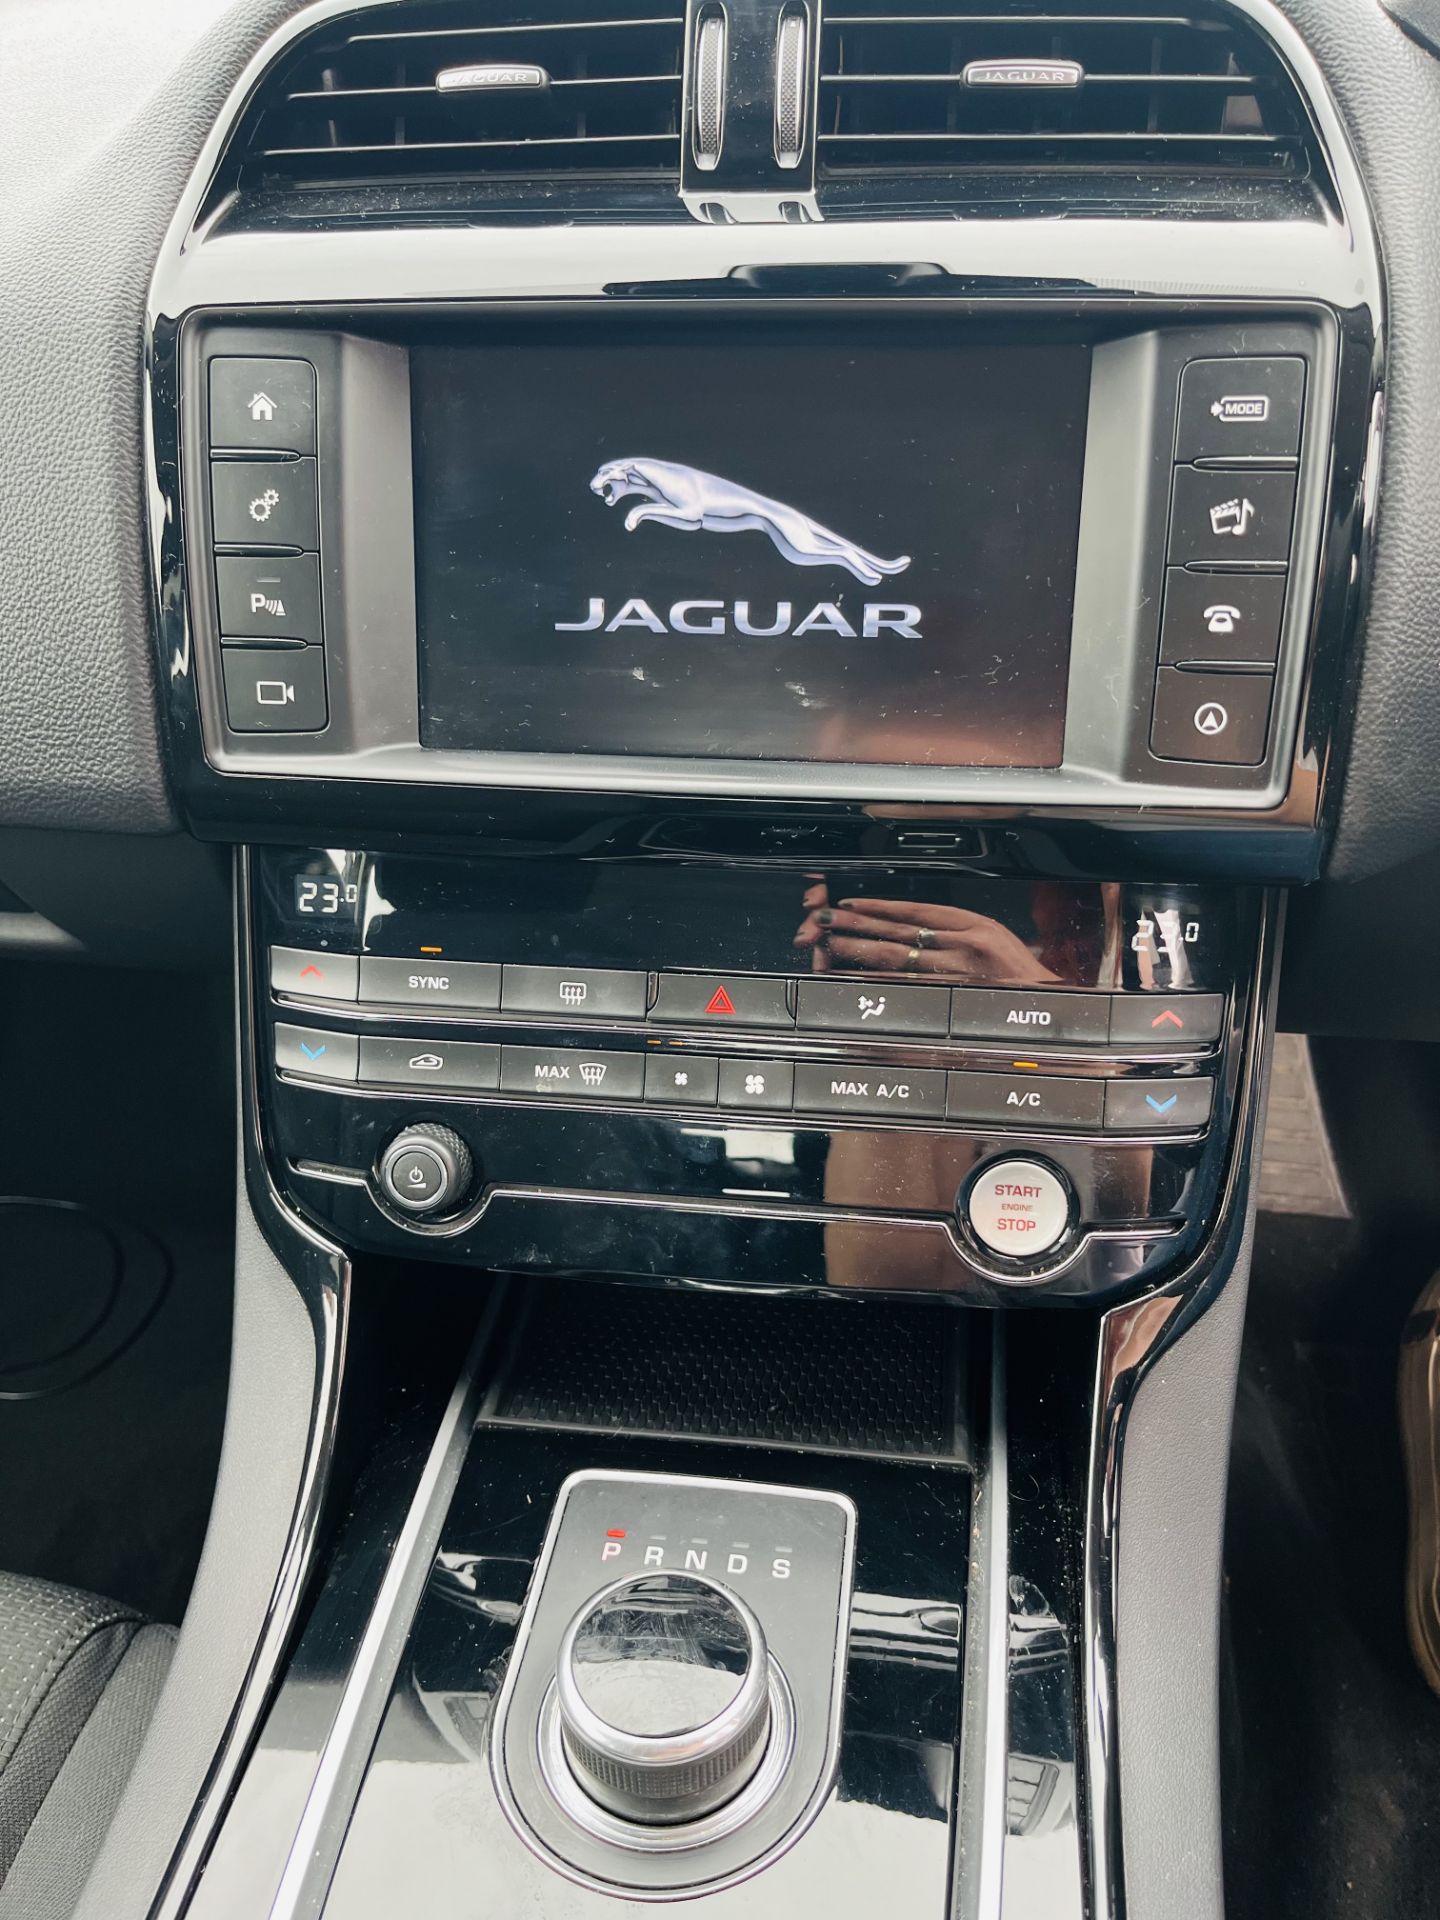 ** ON SALE ** Jaguar XE 2.0 D 180 SE Saloon 2017 '17 Reg' - ULEZ Complaint -Sat/Nav - Image 18 of 35